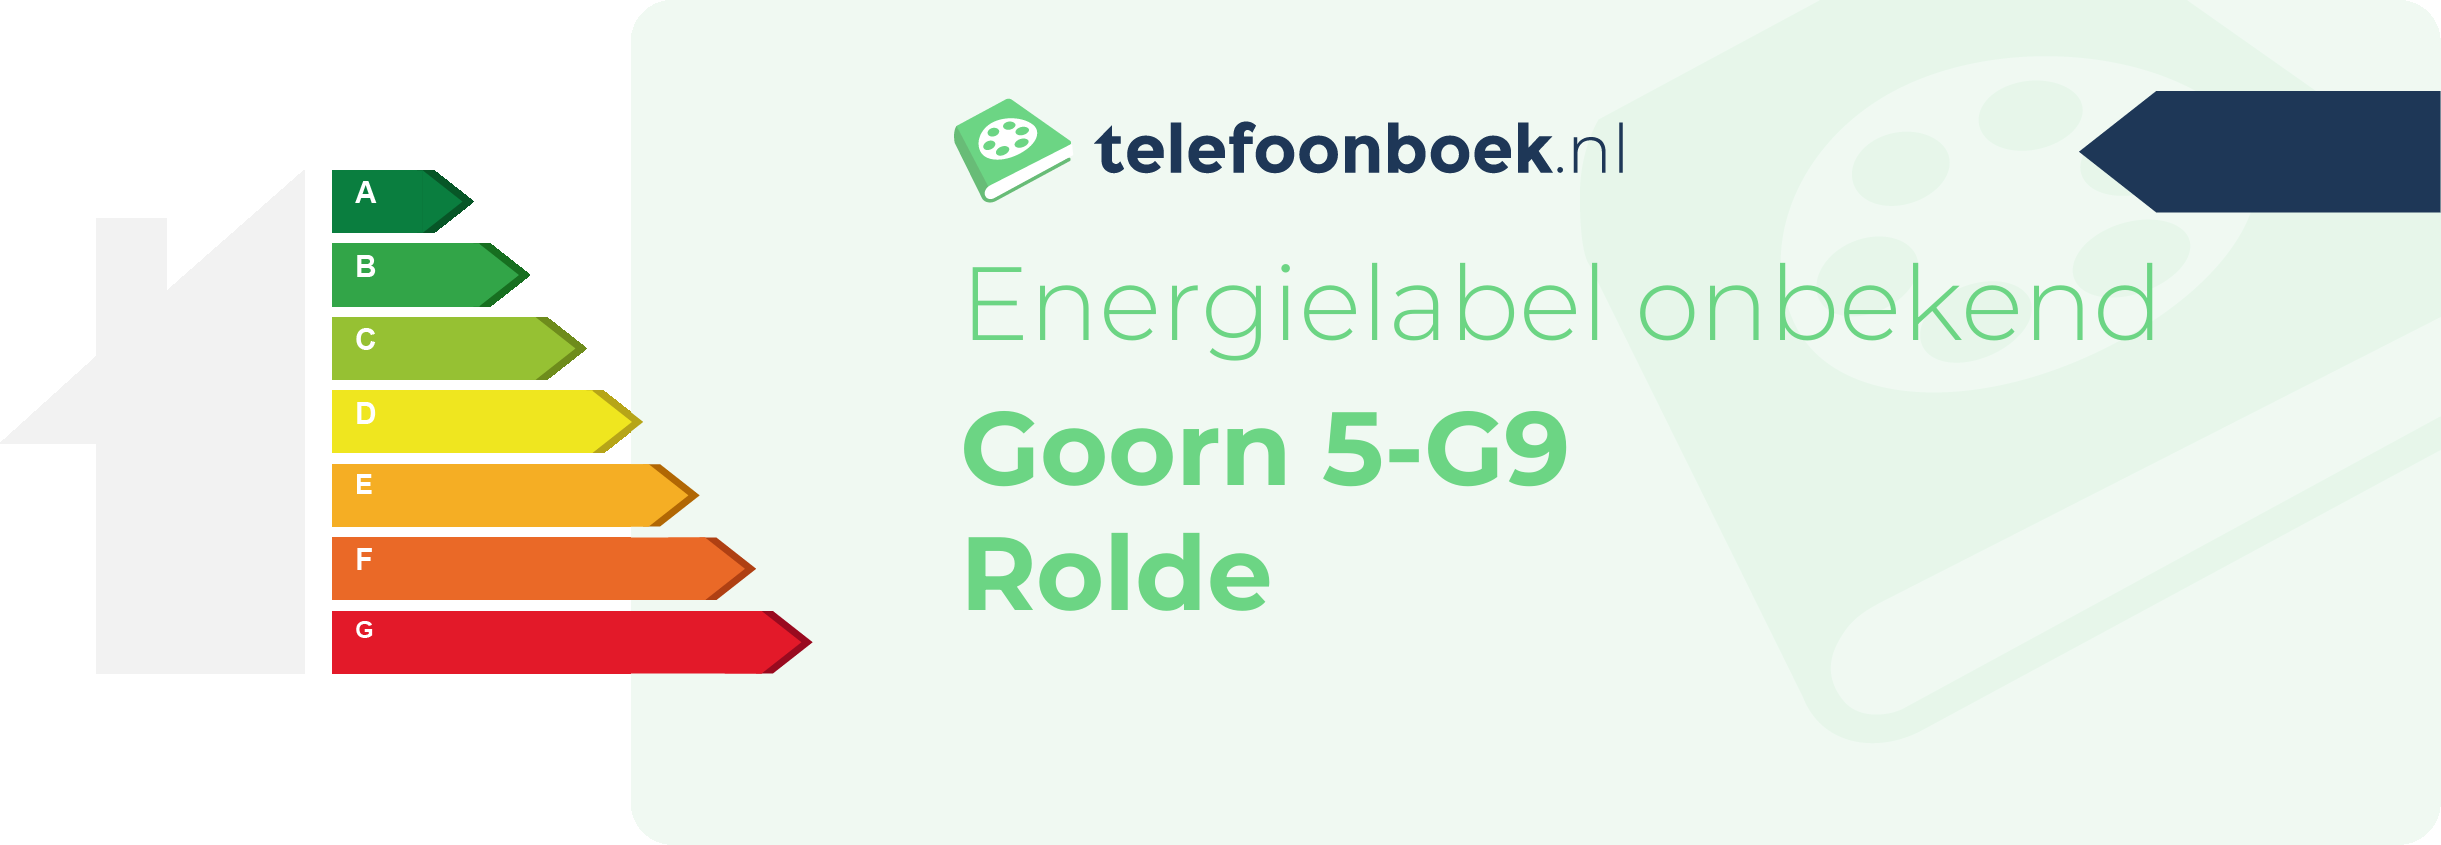 Energielabel Goorn 5-G9 Rolde